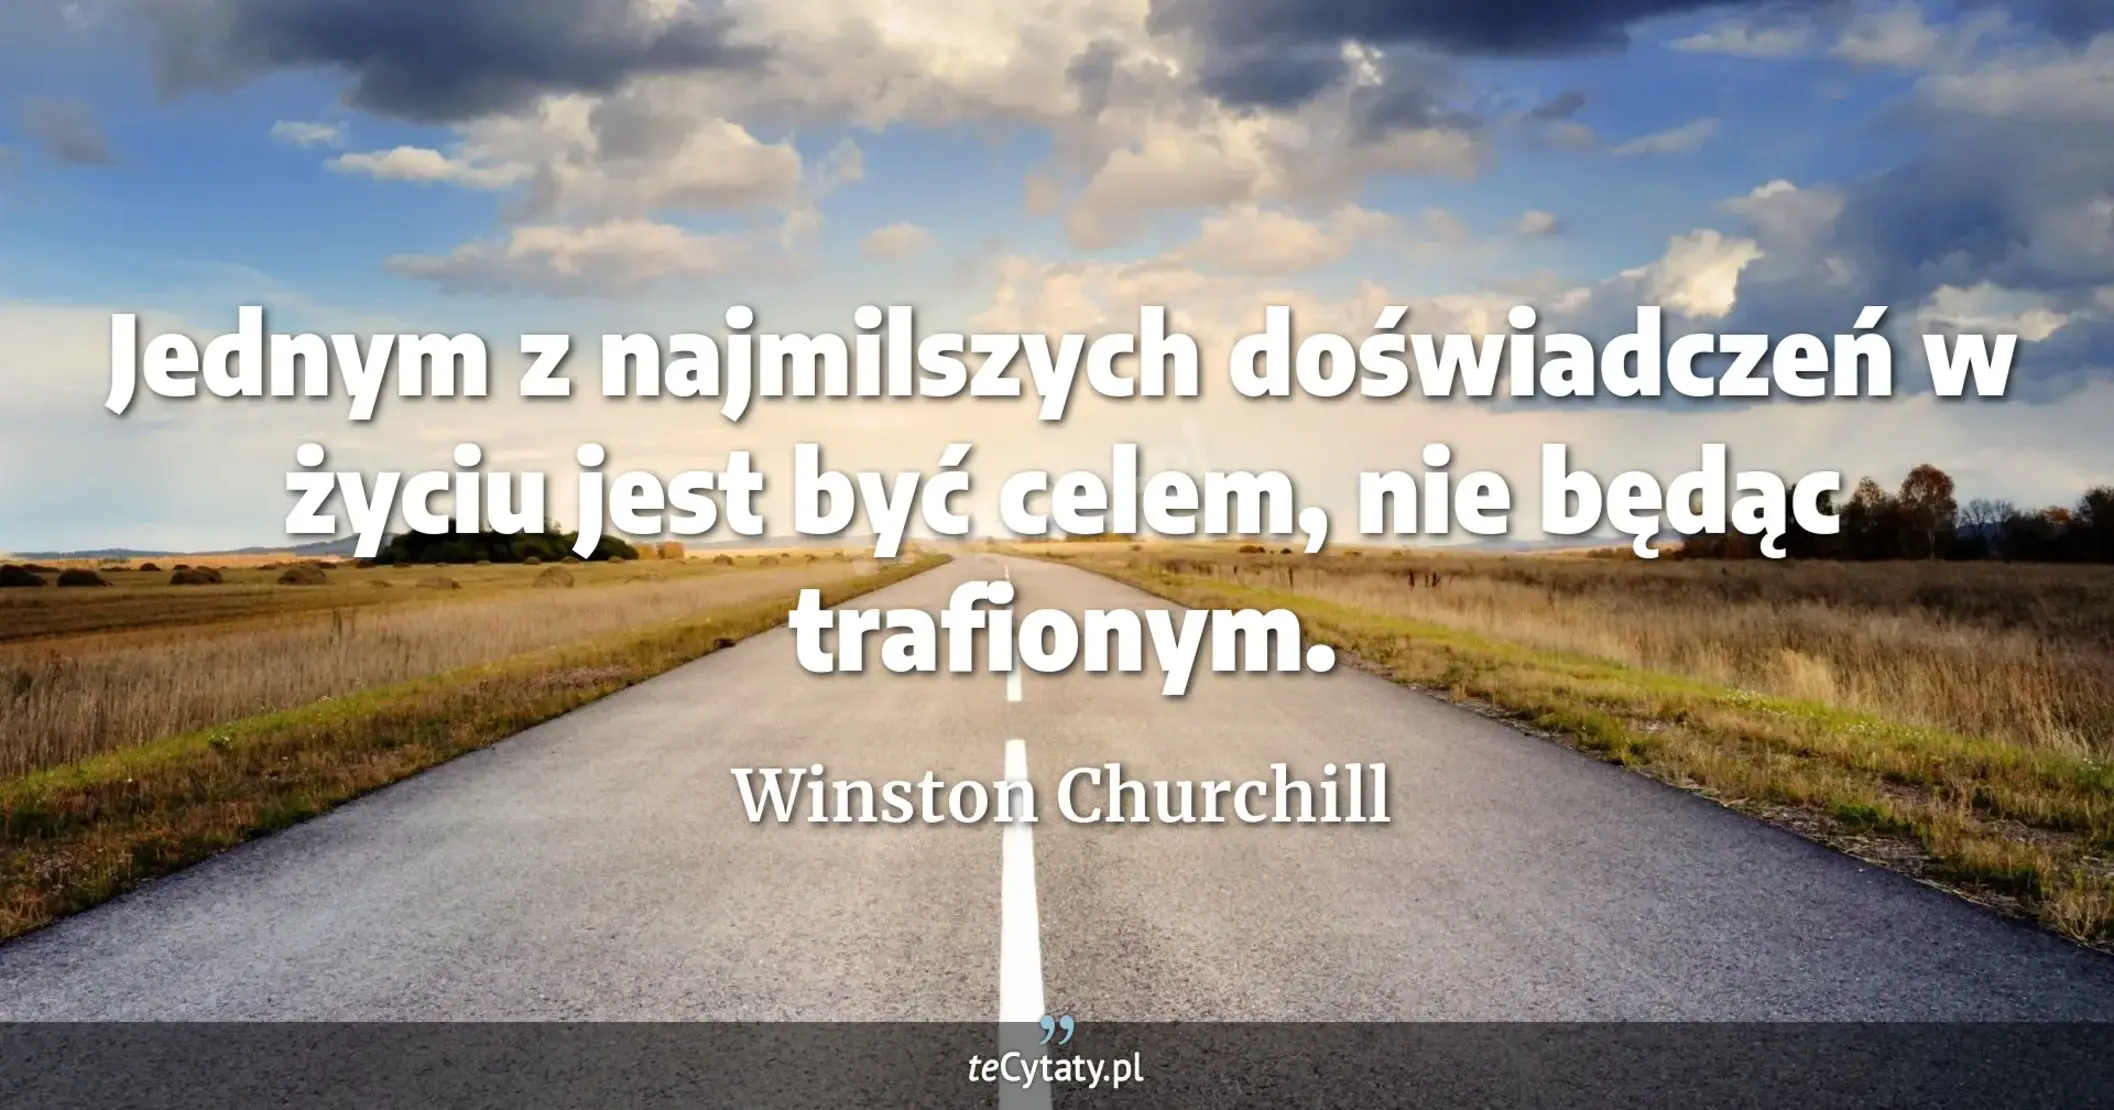 Jednym z najmilszych doświadczeń w życiu jest być celem, nie będąc trafionym. - Winston Churchill